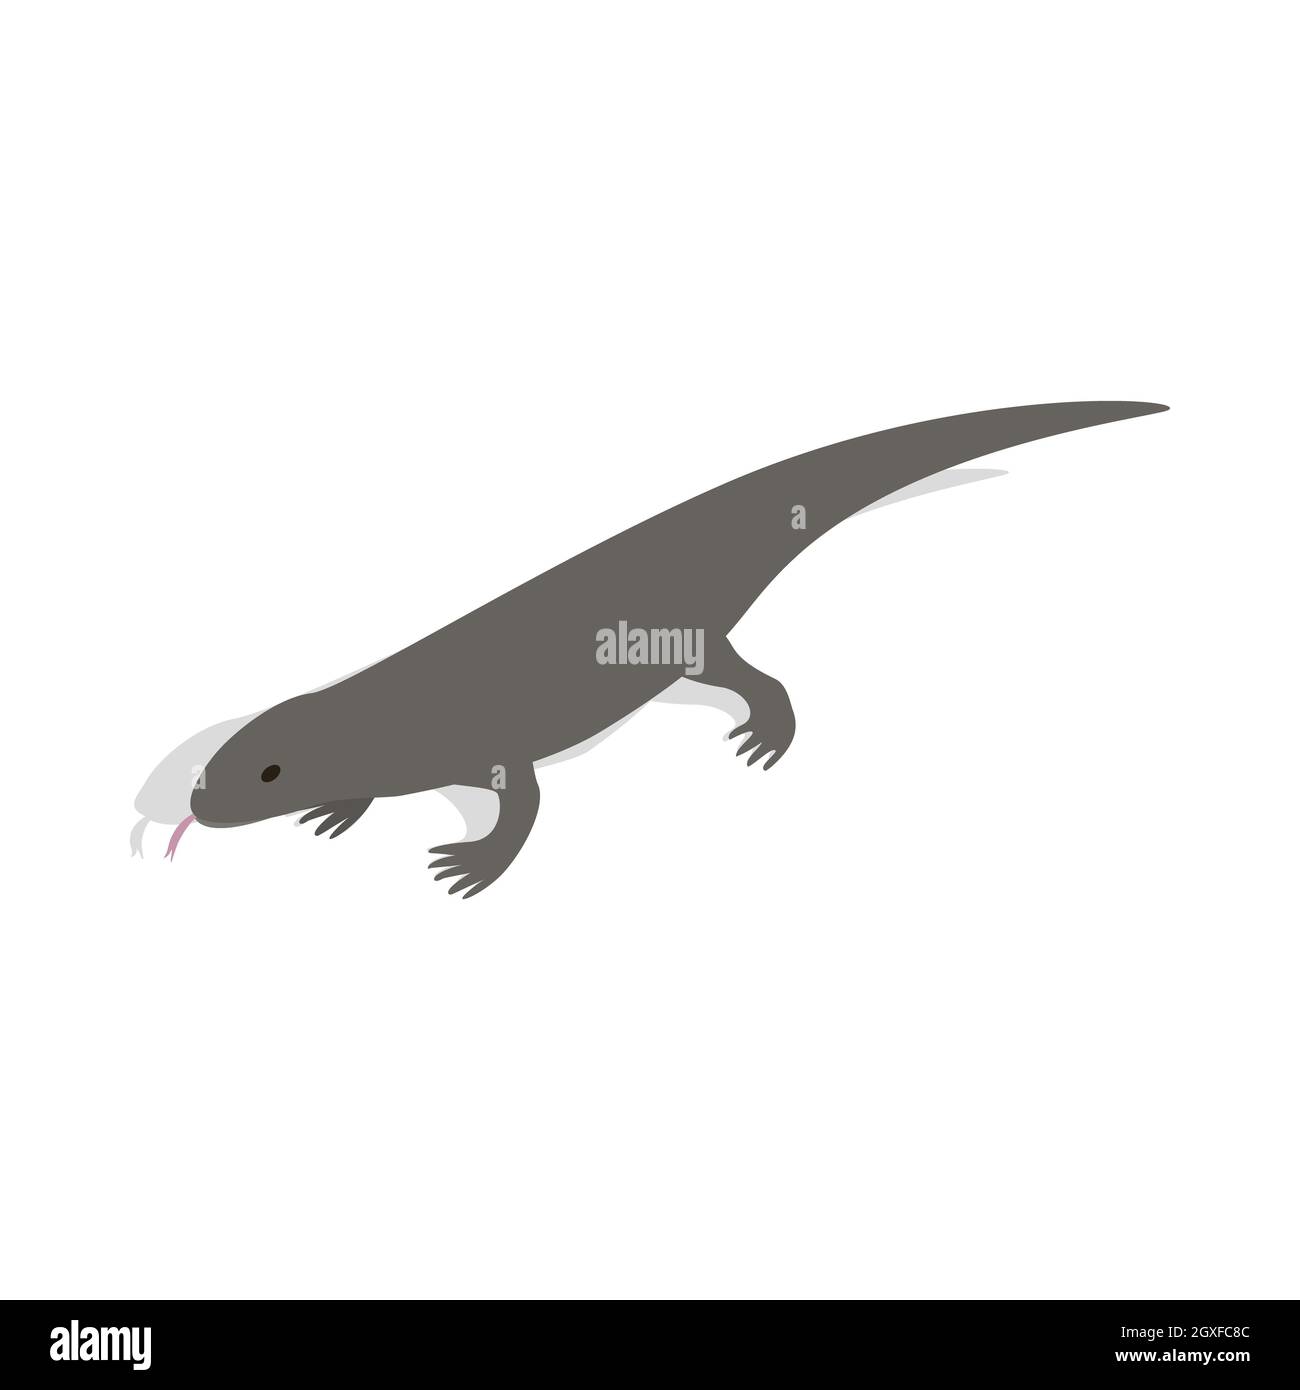 Icona Lizard in stile 3D isometrico su sfondo bianco Foto Stock